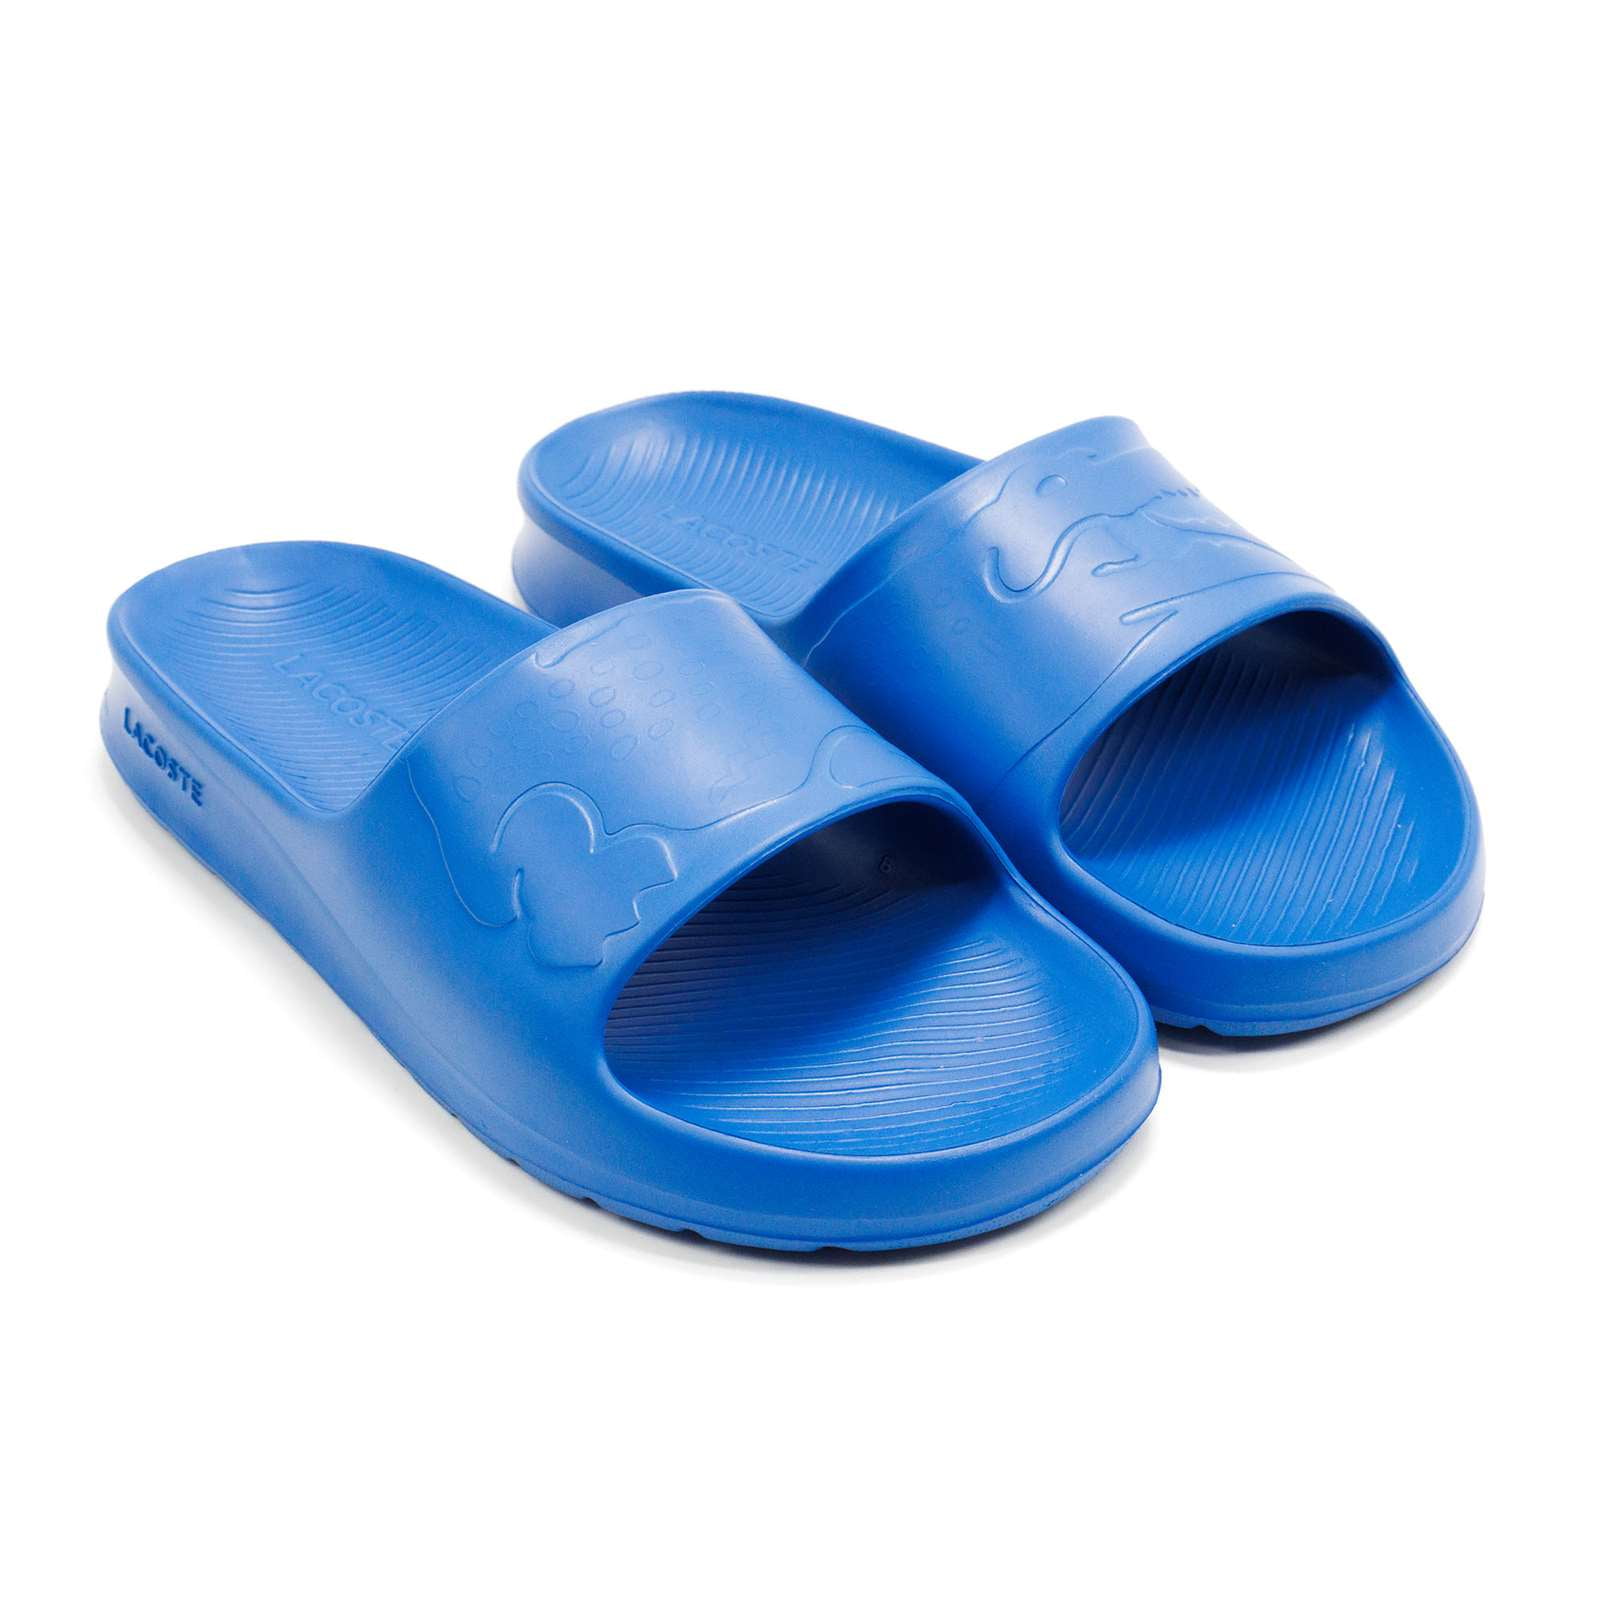 Canberra maling Oversætte Lacoste Men's Croco 2.0 1122 2 Slide Sandals, Blue,12 M US - Walmart.com